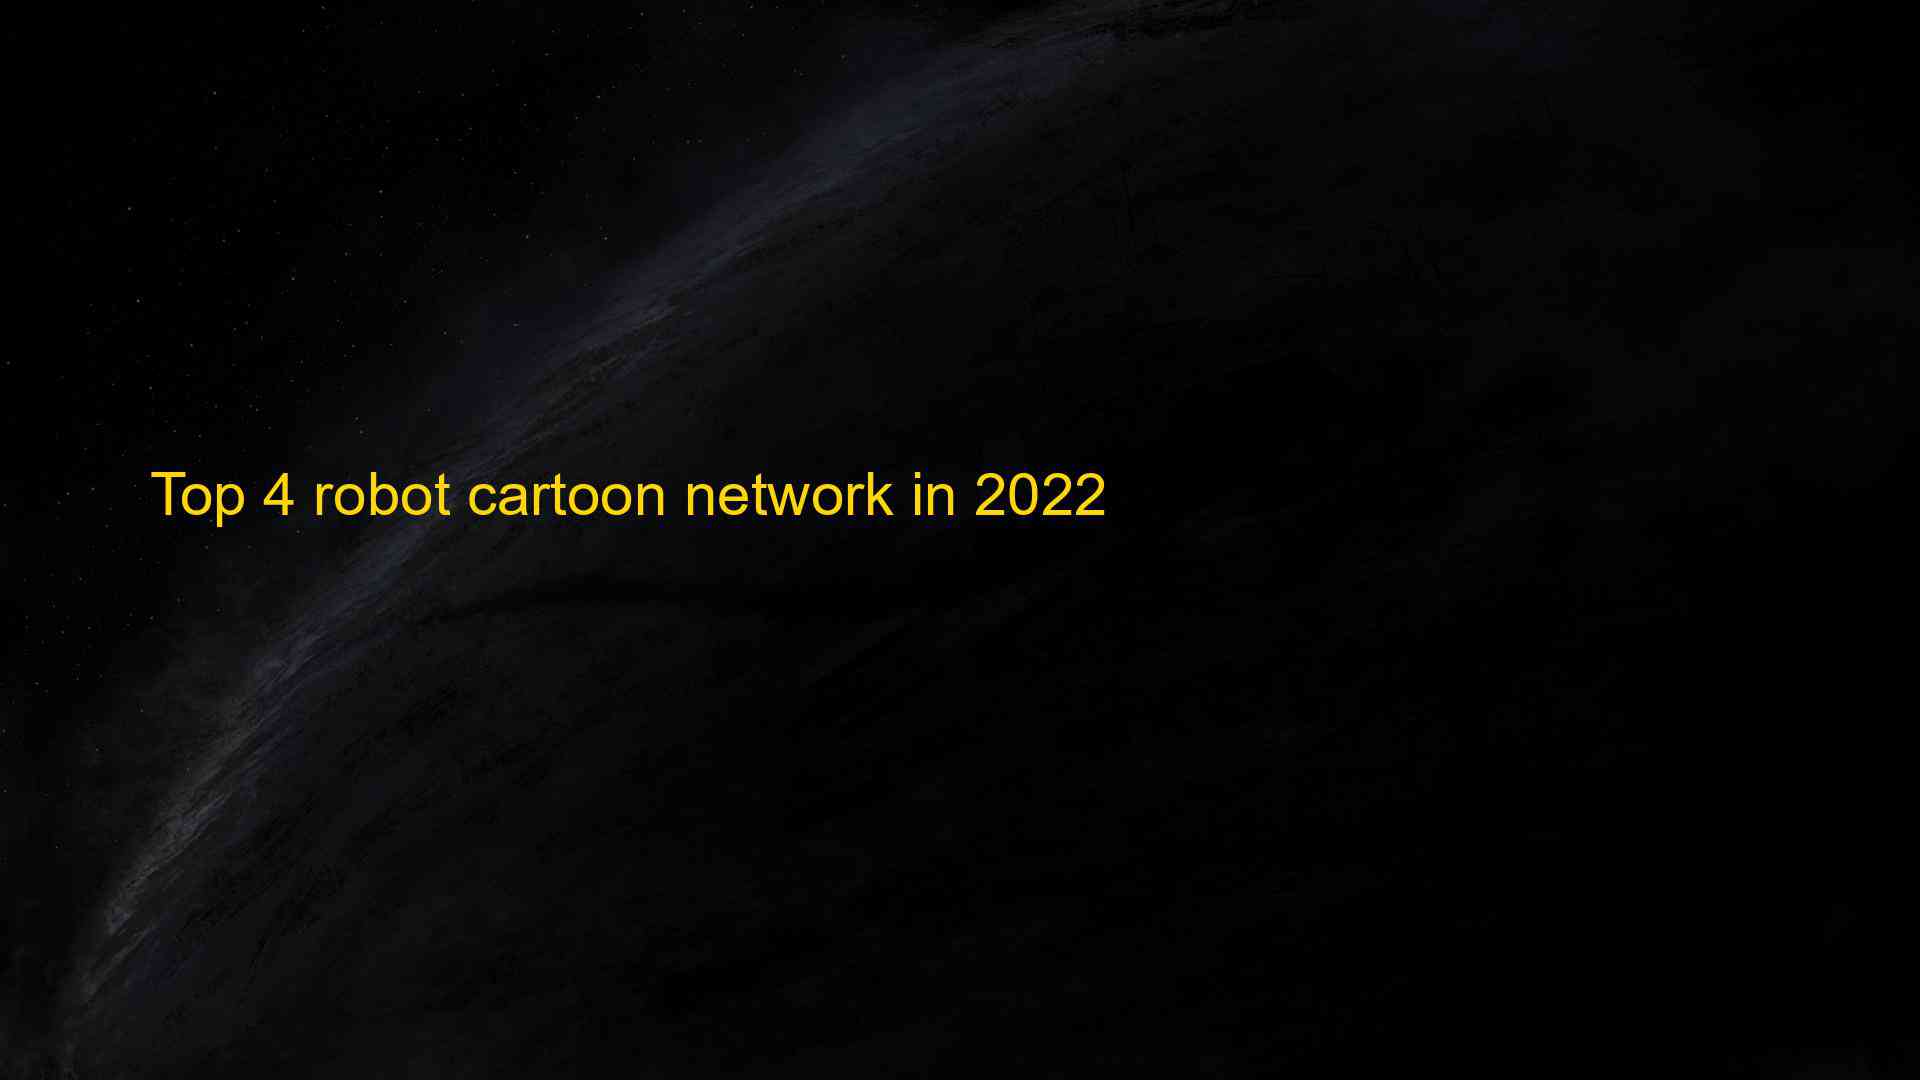 Top 4 robot cartoon network in 2022 - EU-Vietnam Business Network (EVBN)